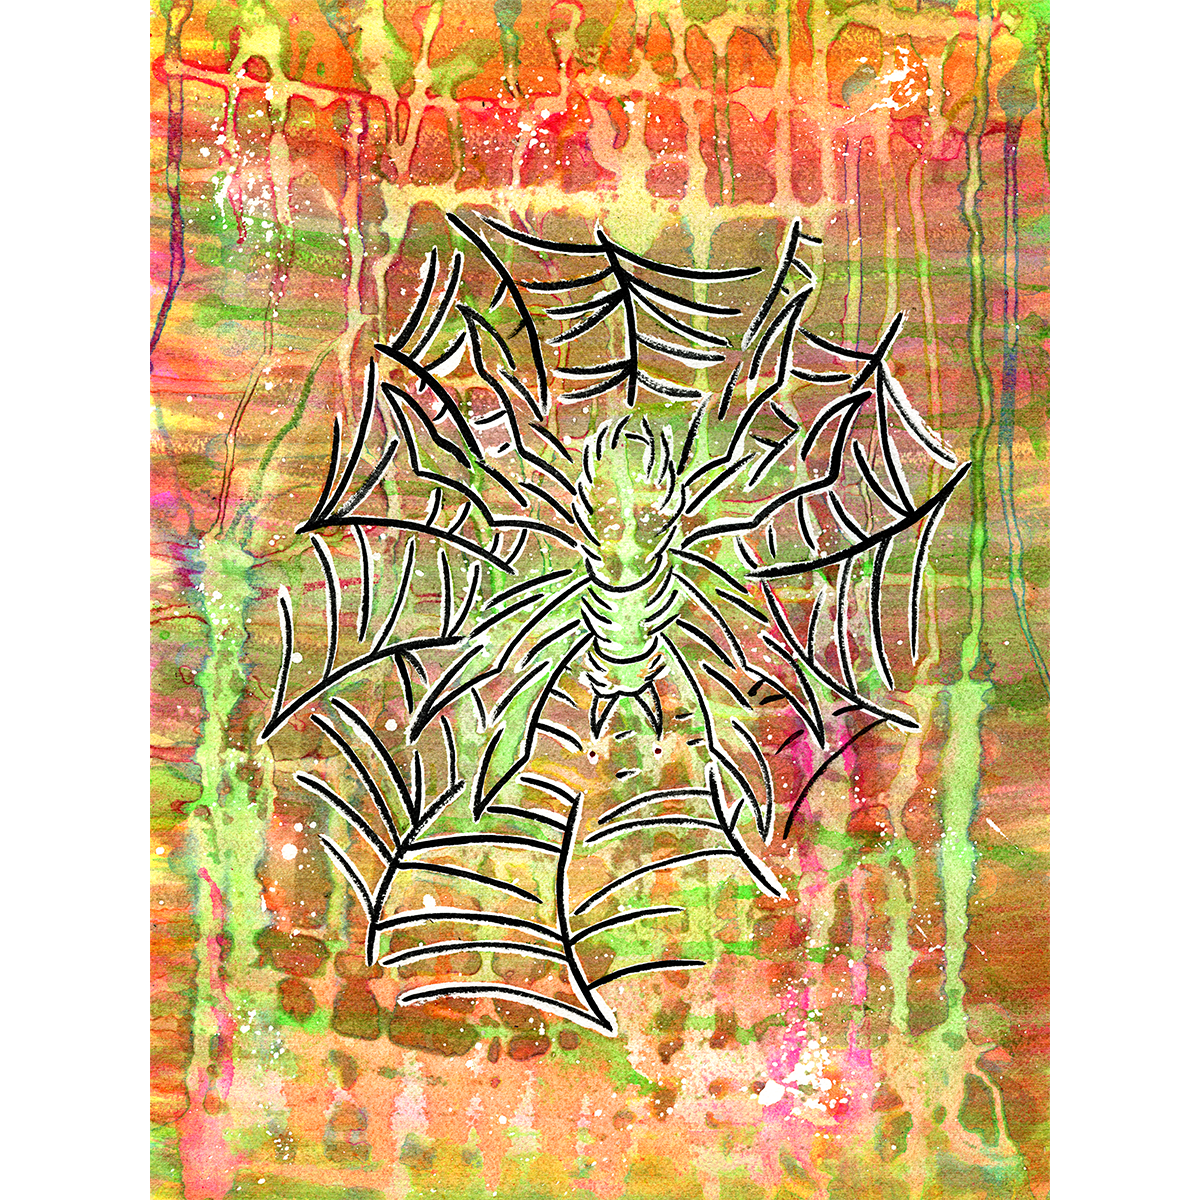 Sean Martin "Arachnid" Giclee Print